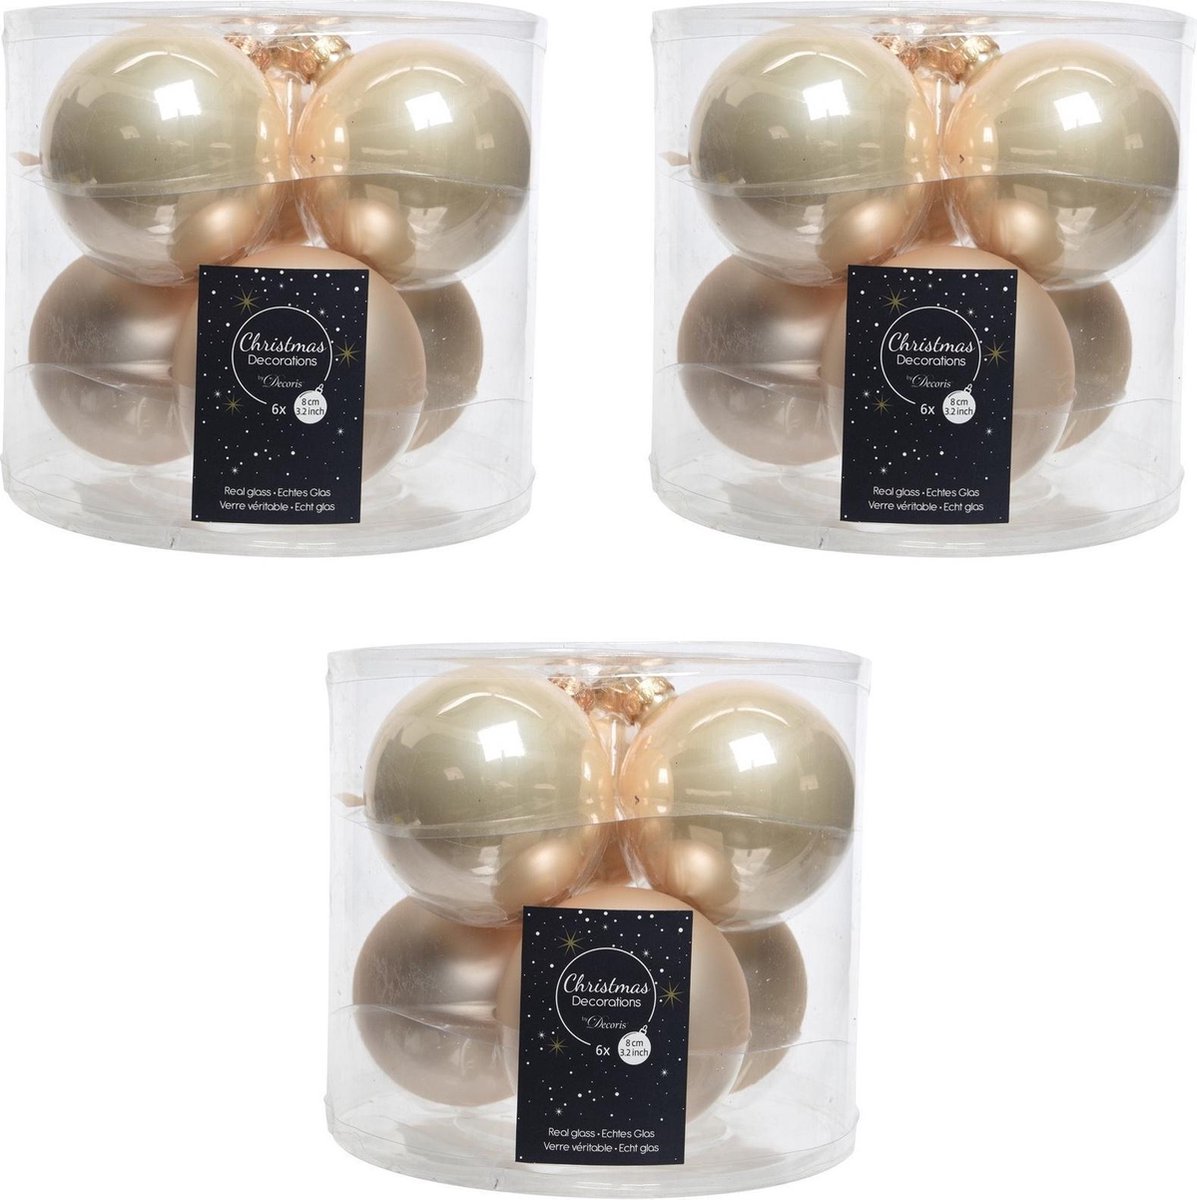 18x Licht parel/champagne glazen kerstballen 8 cm - glans en mat - Glans/glanzende - Kerstboomversiering licht parel/champagne